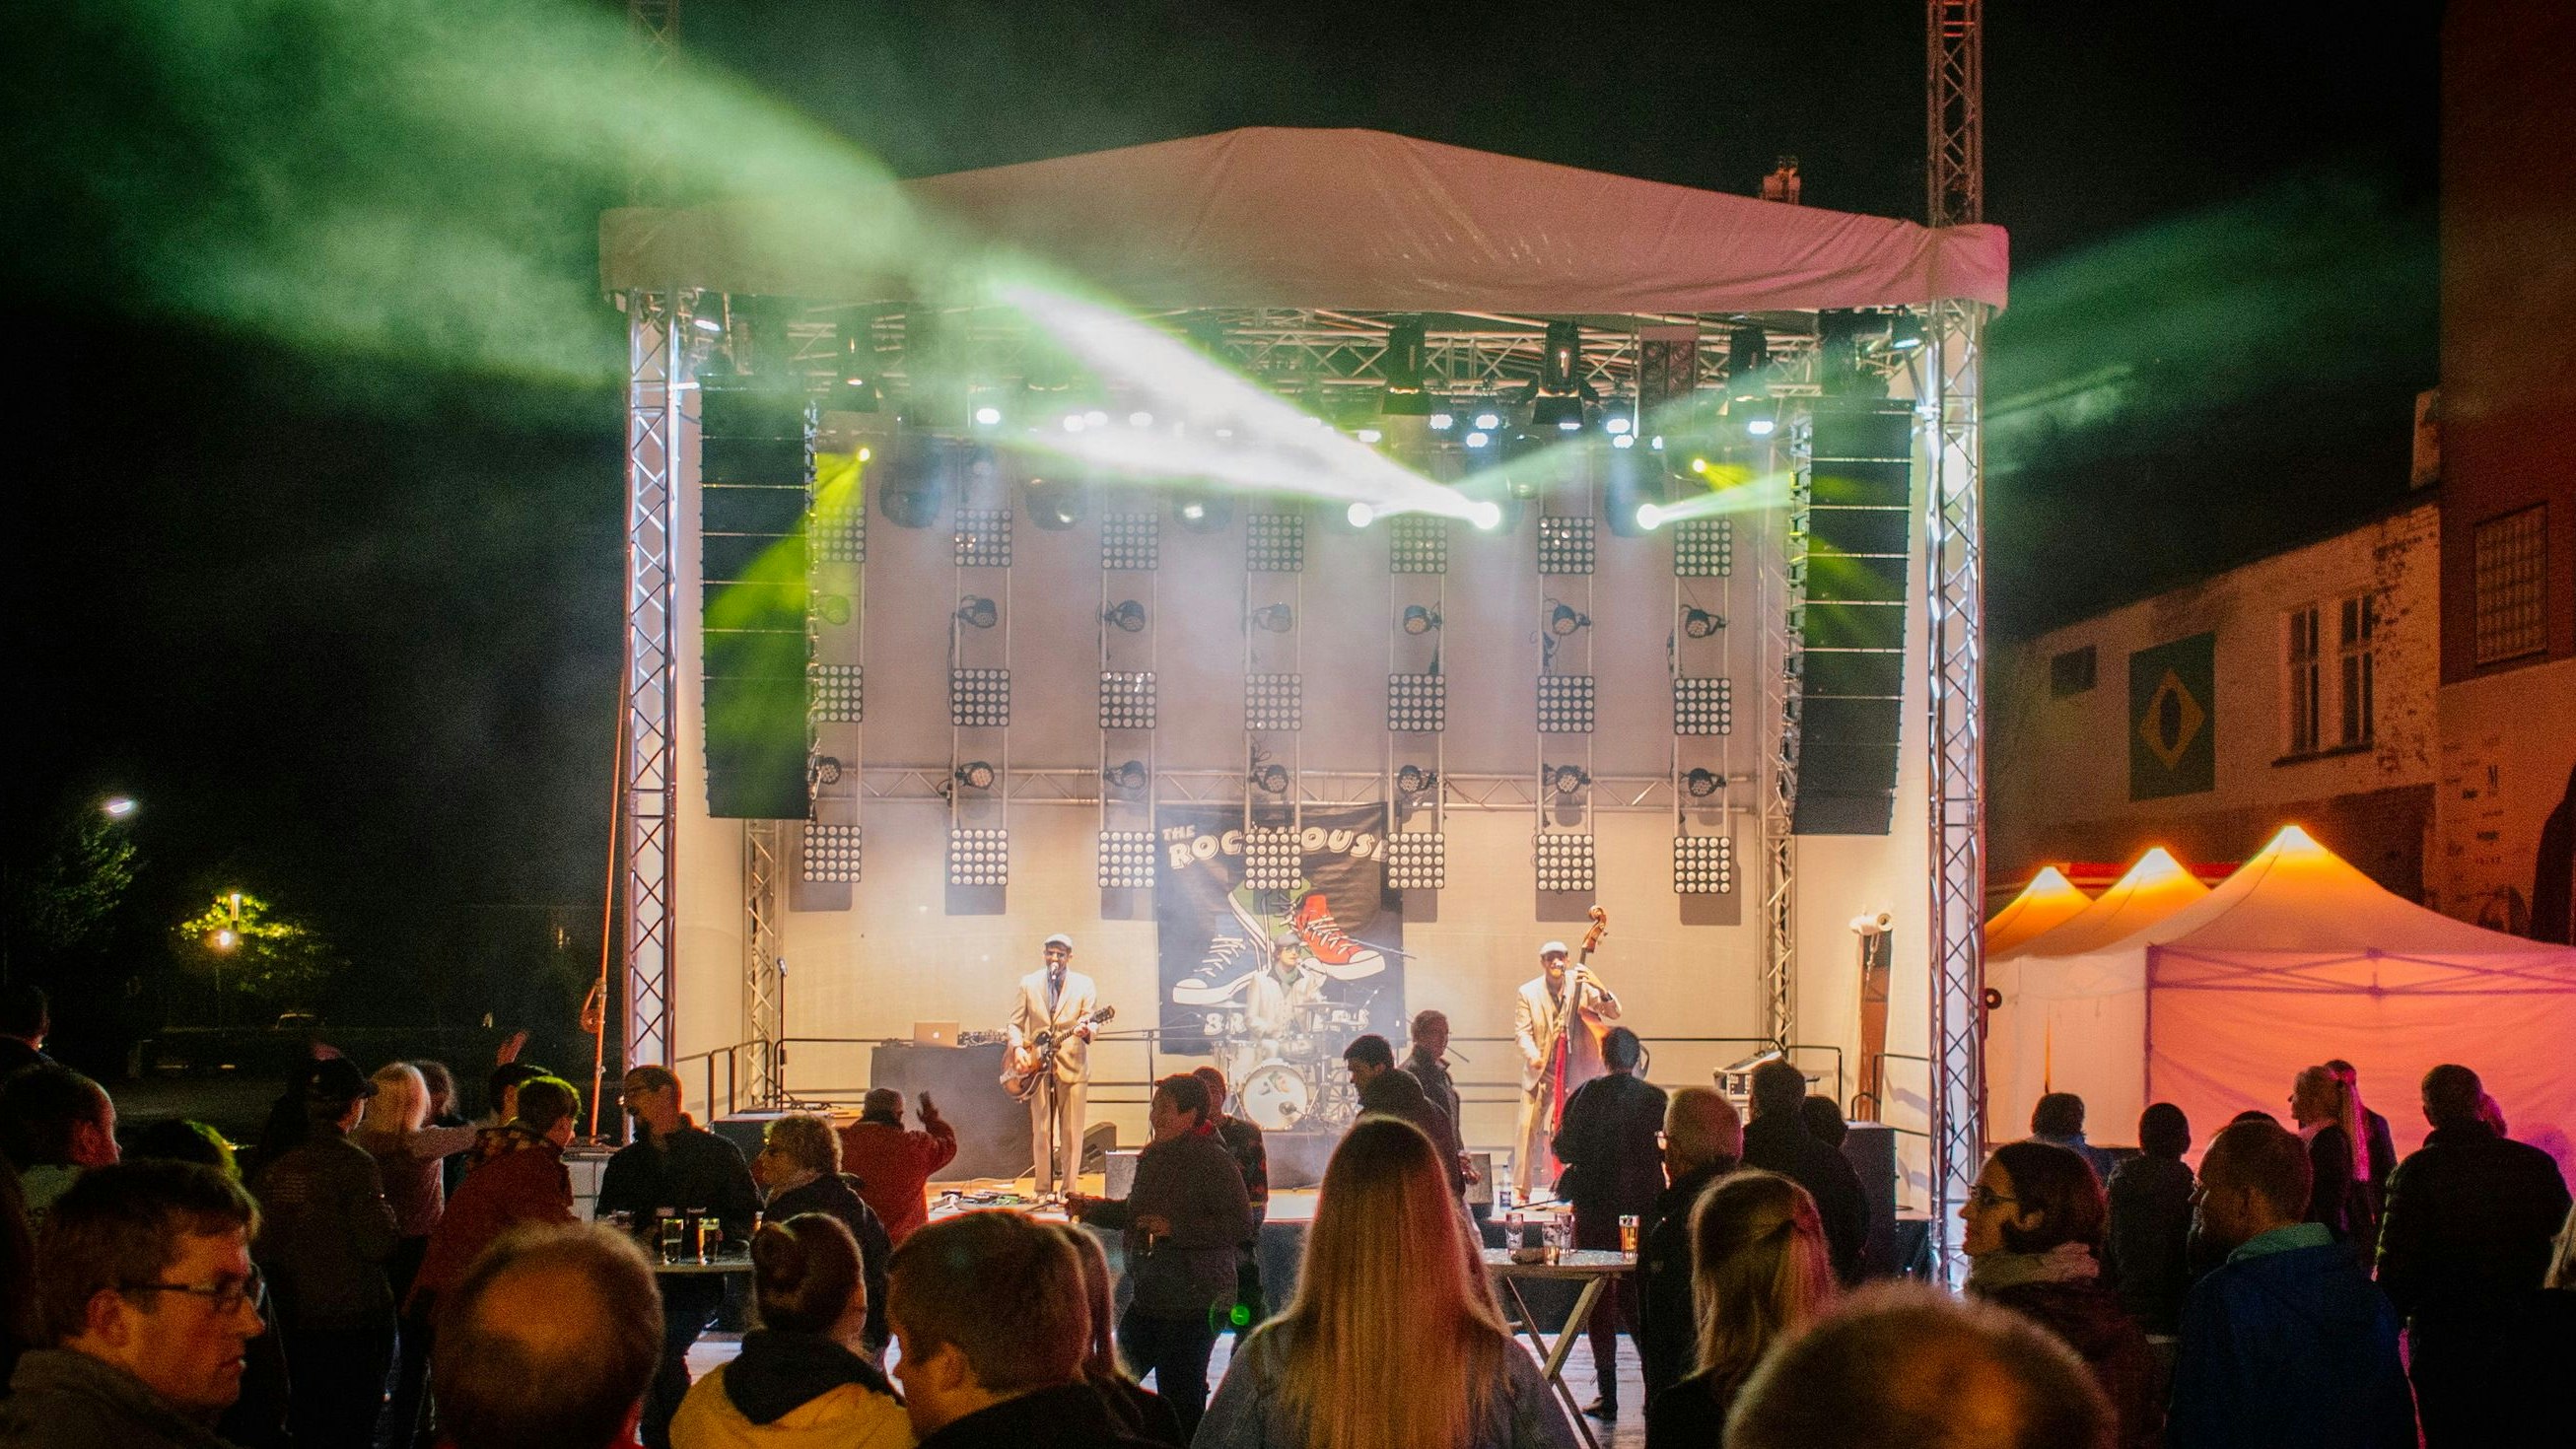 Das Stadtfest 2018 in Lohne: Dieses Jahr soll es in kleinerem Rahmen stattfinden. Archivfoto: Tombrägel/Stadt Lohne